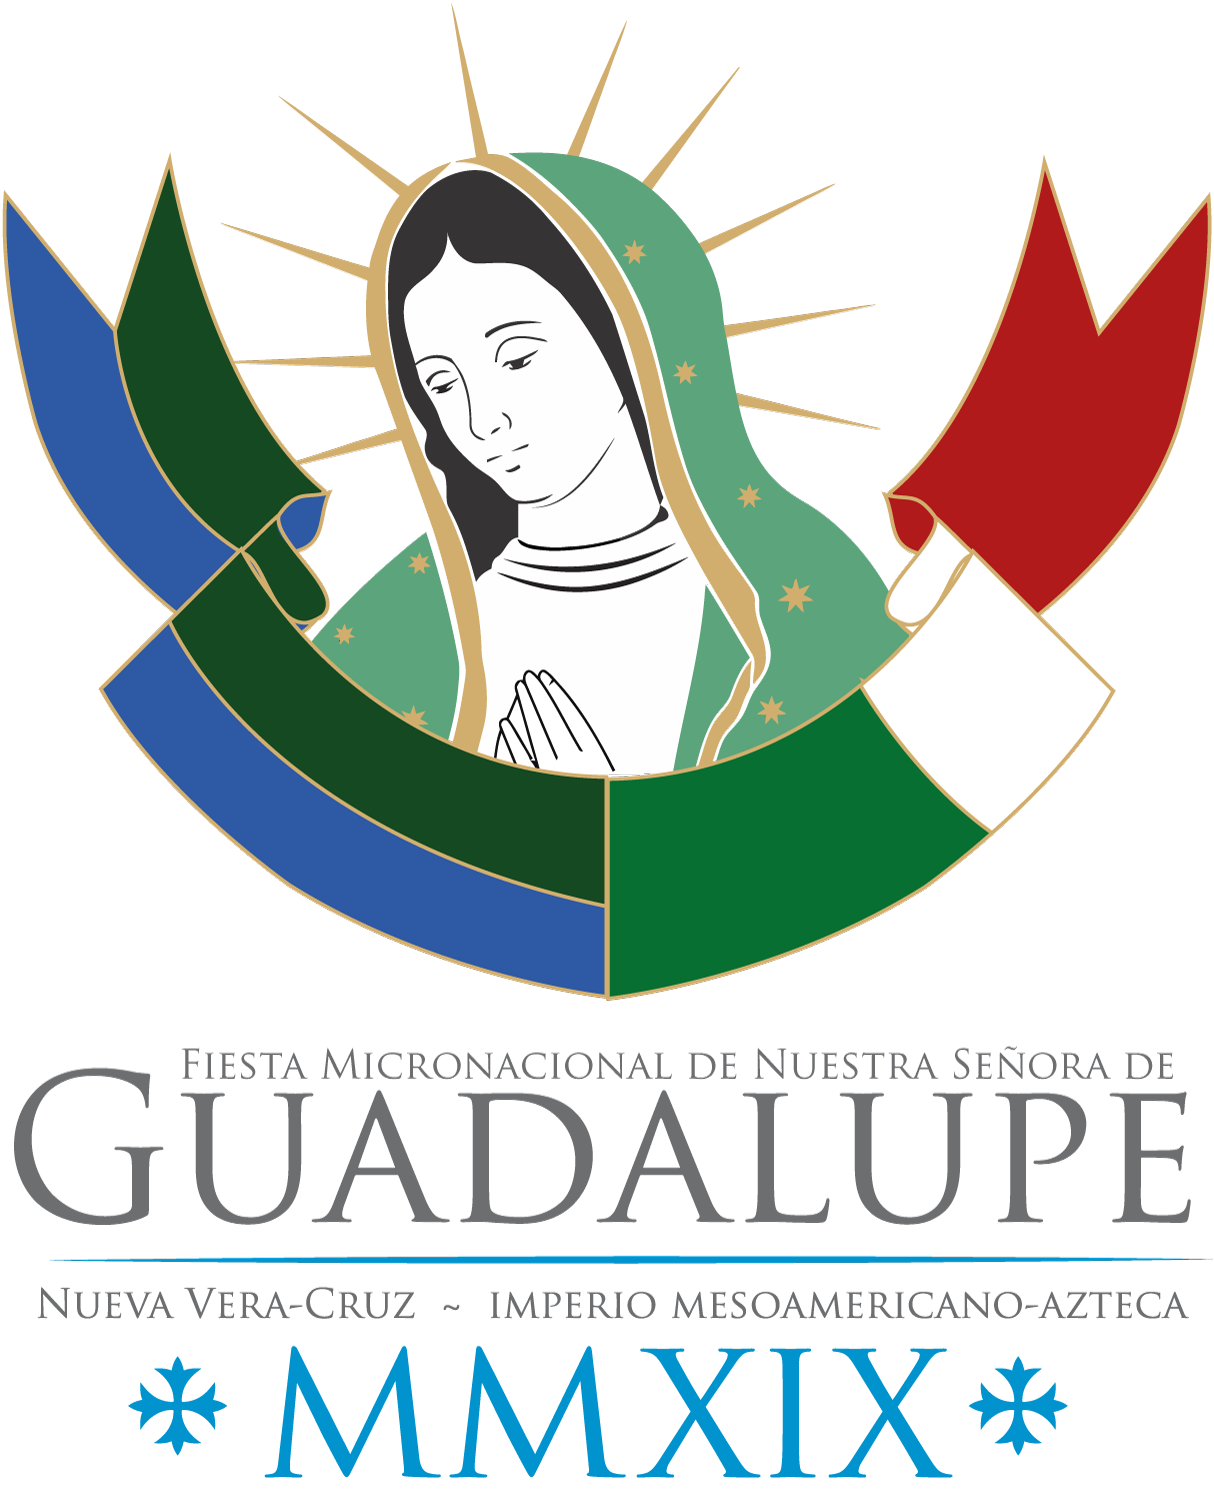 Fiesta Bimicronacional de la Virgen de Guadalupe Azteca - Nueva Vera-Cruz 12/12/2019